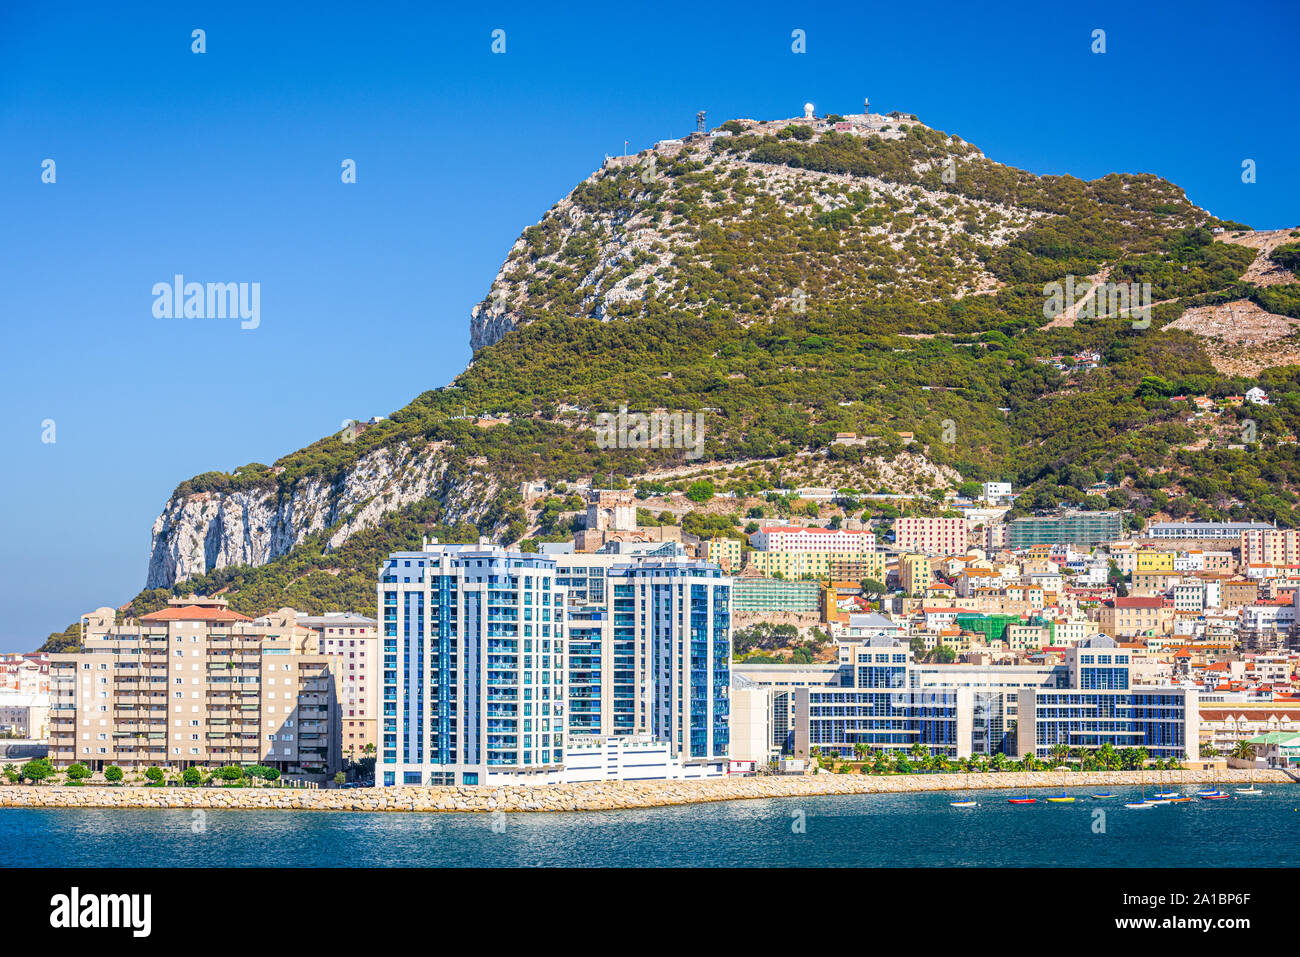 Le rocher de Gibraltar, territoire britannique d'outre-mer. Banque D'Images